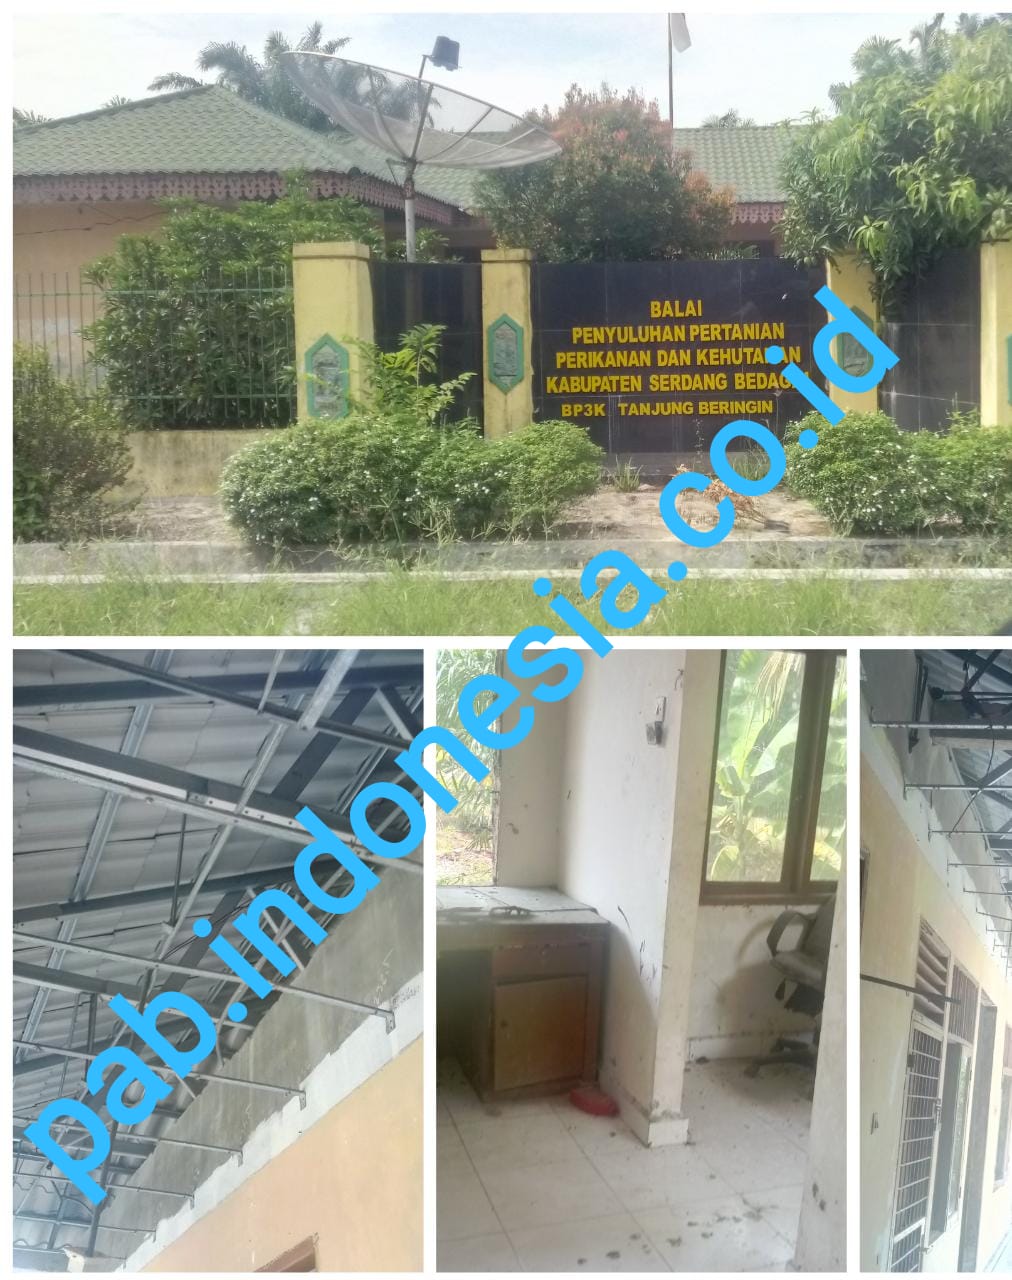 Bangunan Rusak dan Terlihat Sepi, Kantor Balai Penyuluhan Pertanian Tanjung Beringin Butuh Renovasi